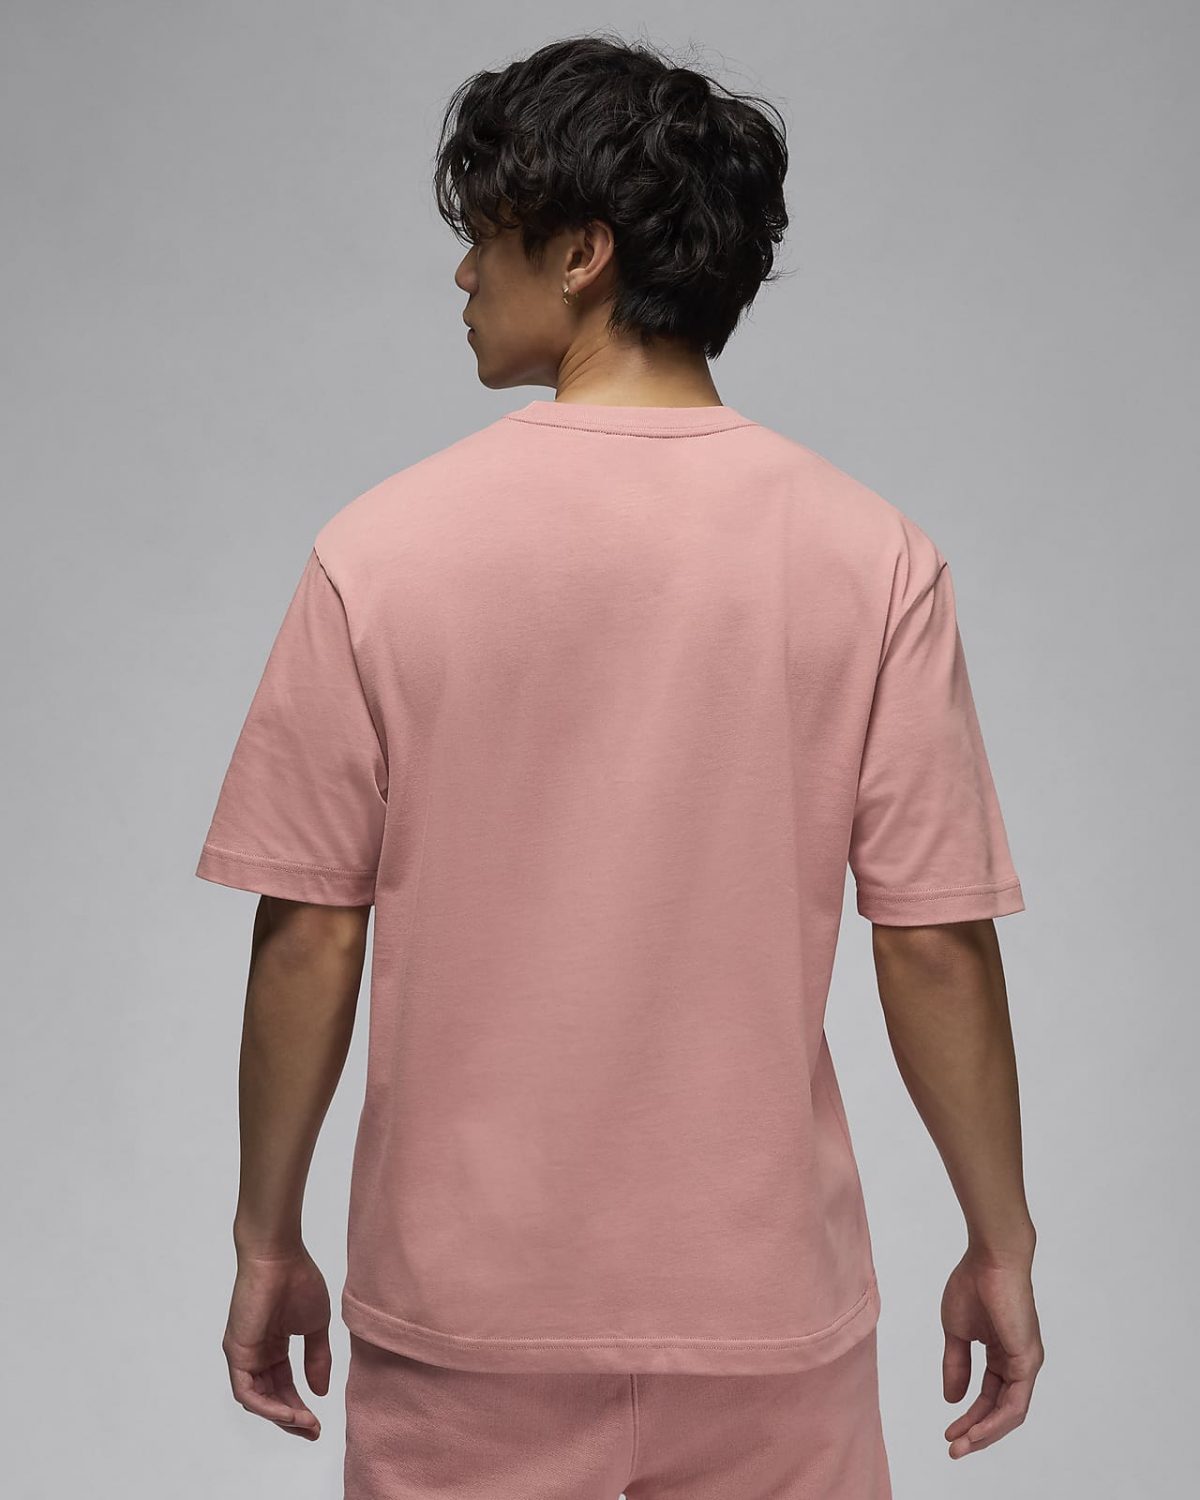 Мужская футболка nike Air Jordan Wordmark розовая фотография